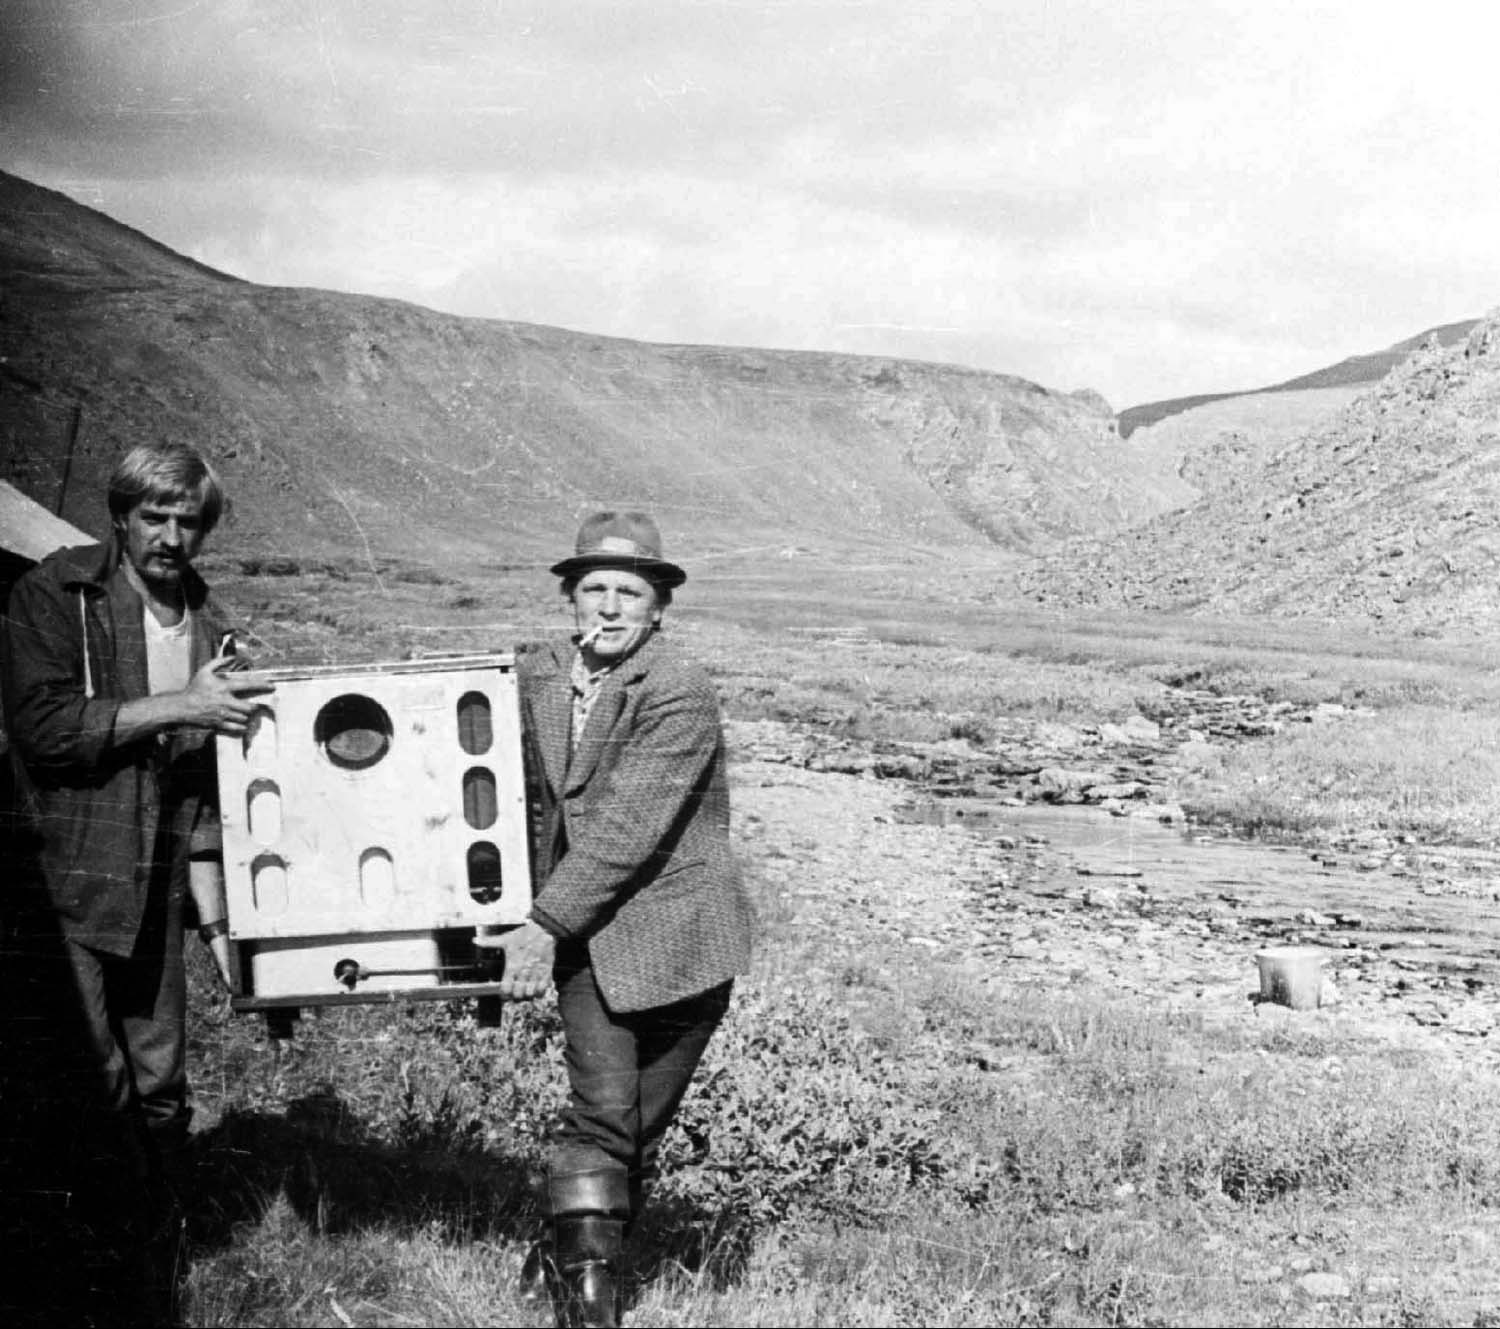 Студент Саня Шишалов и нач. отряда Брагин П.Е. несут печку Алмаатинку. 1976 г.